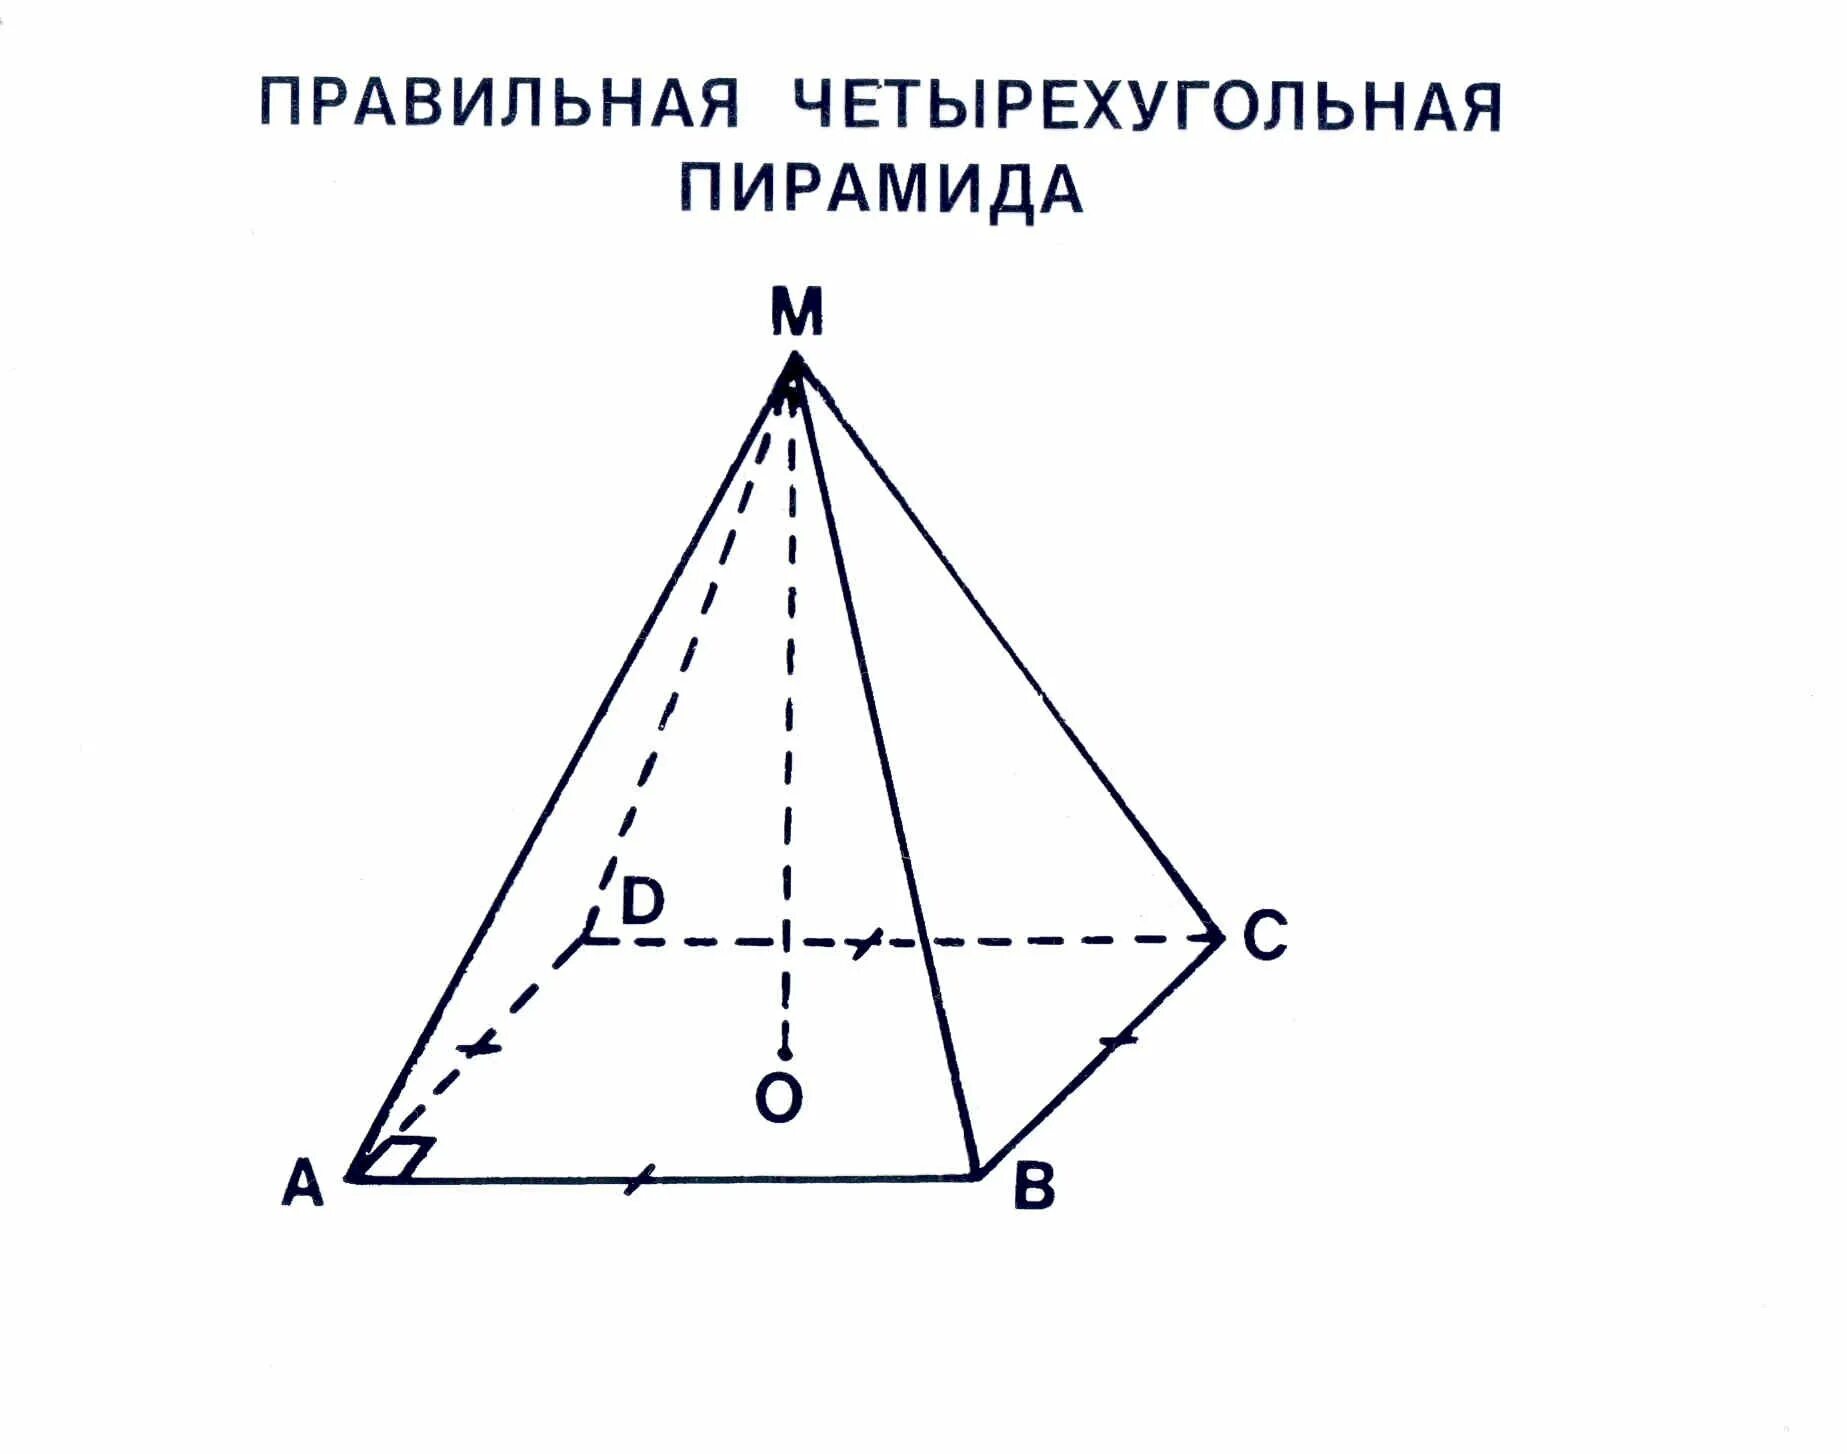 Правильная 4 пирамида. Правильная четырехгранная пирамида чертеж. Правильная четырехугольная пирамида. Правильная четырехугольная пирамида чертеж. Правильная четырехугольная пирамида рисунок.